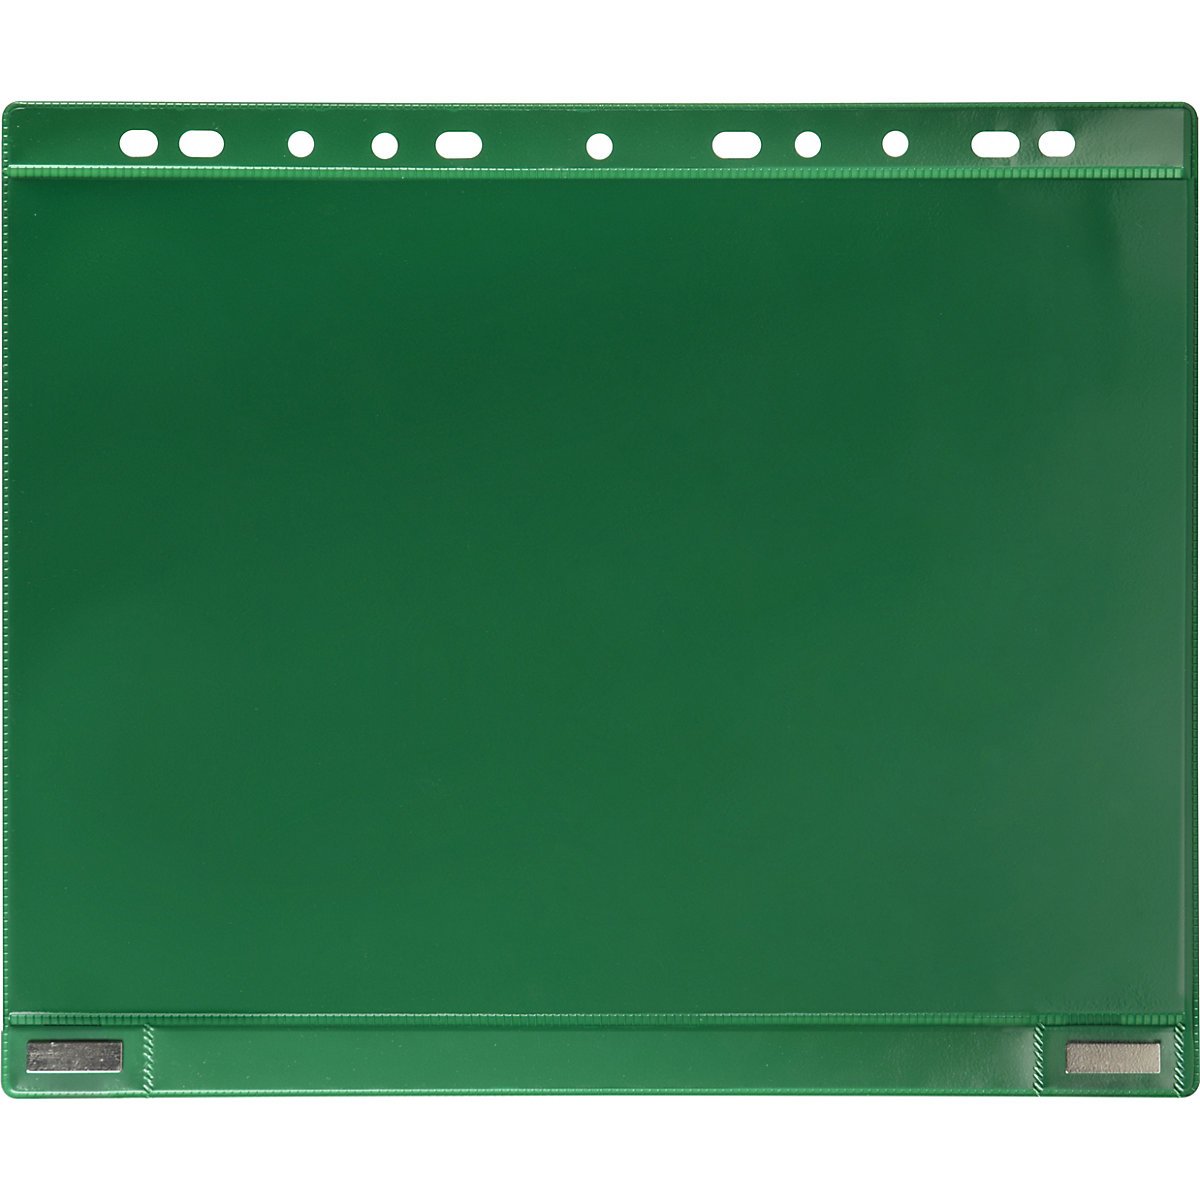 Pochette transparente magnétique avec bord pour classeur – Tarifold:  magnétique, format A4, lot de 5